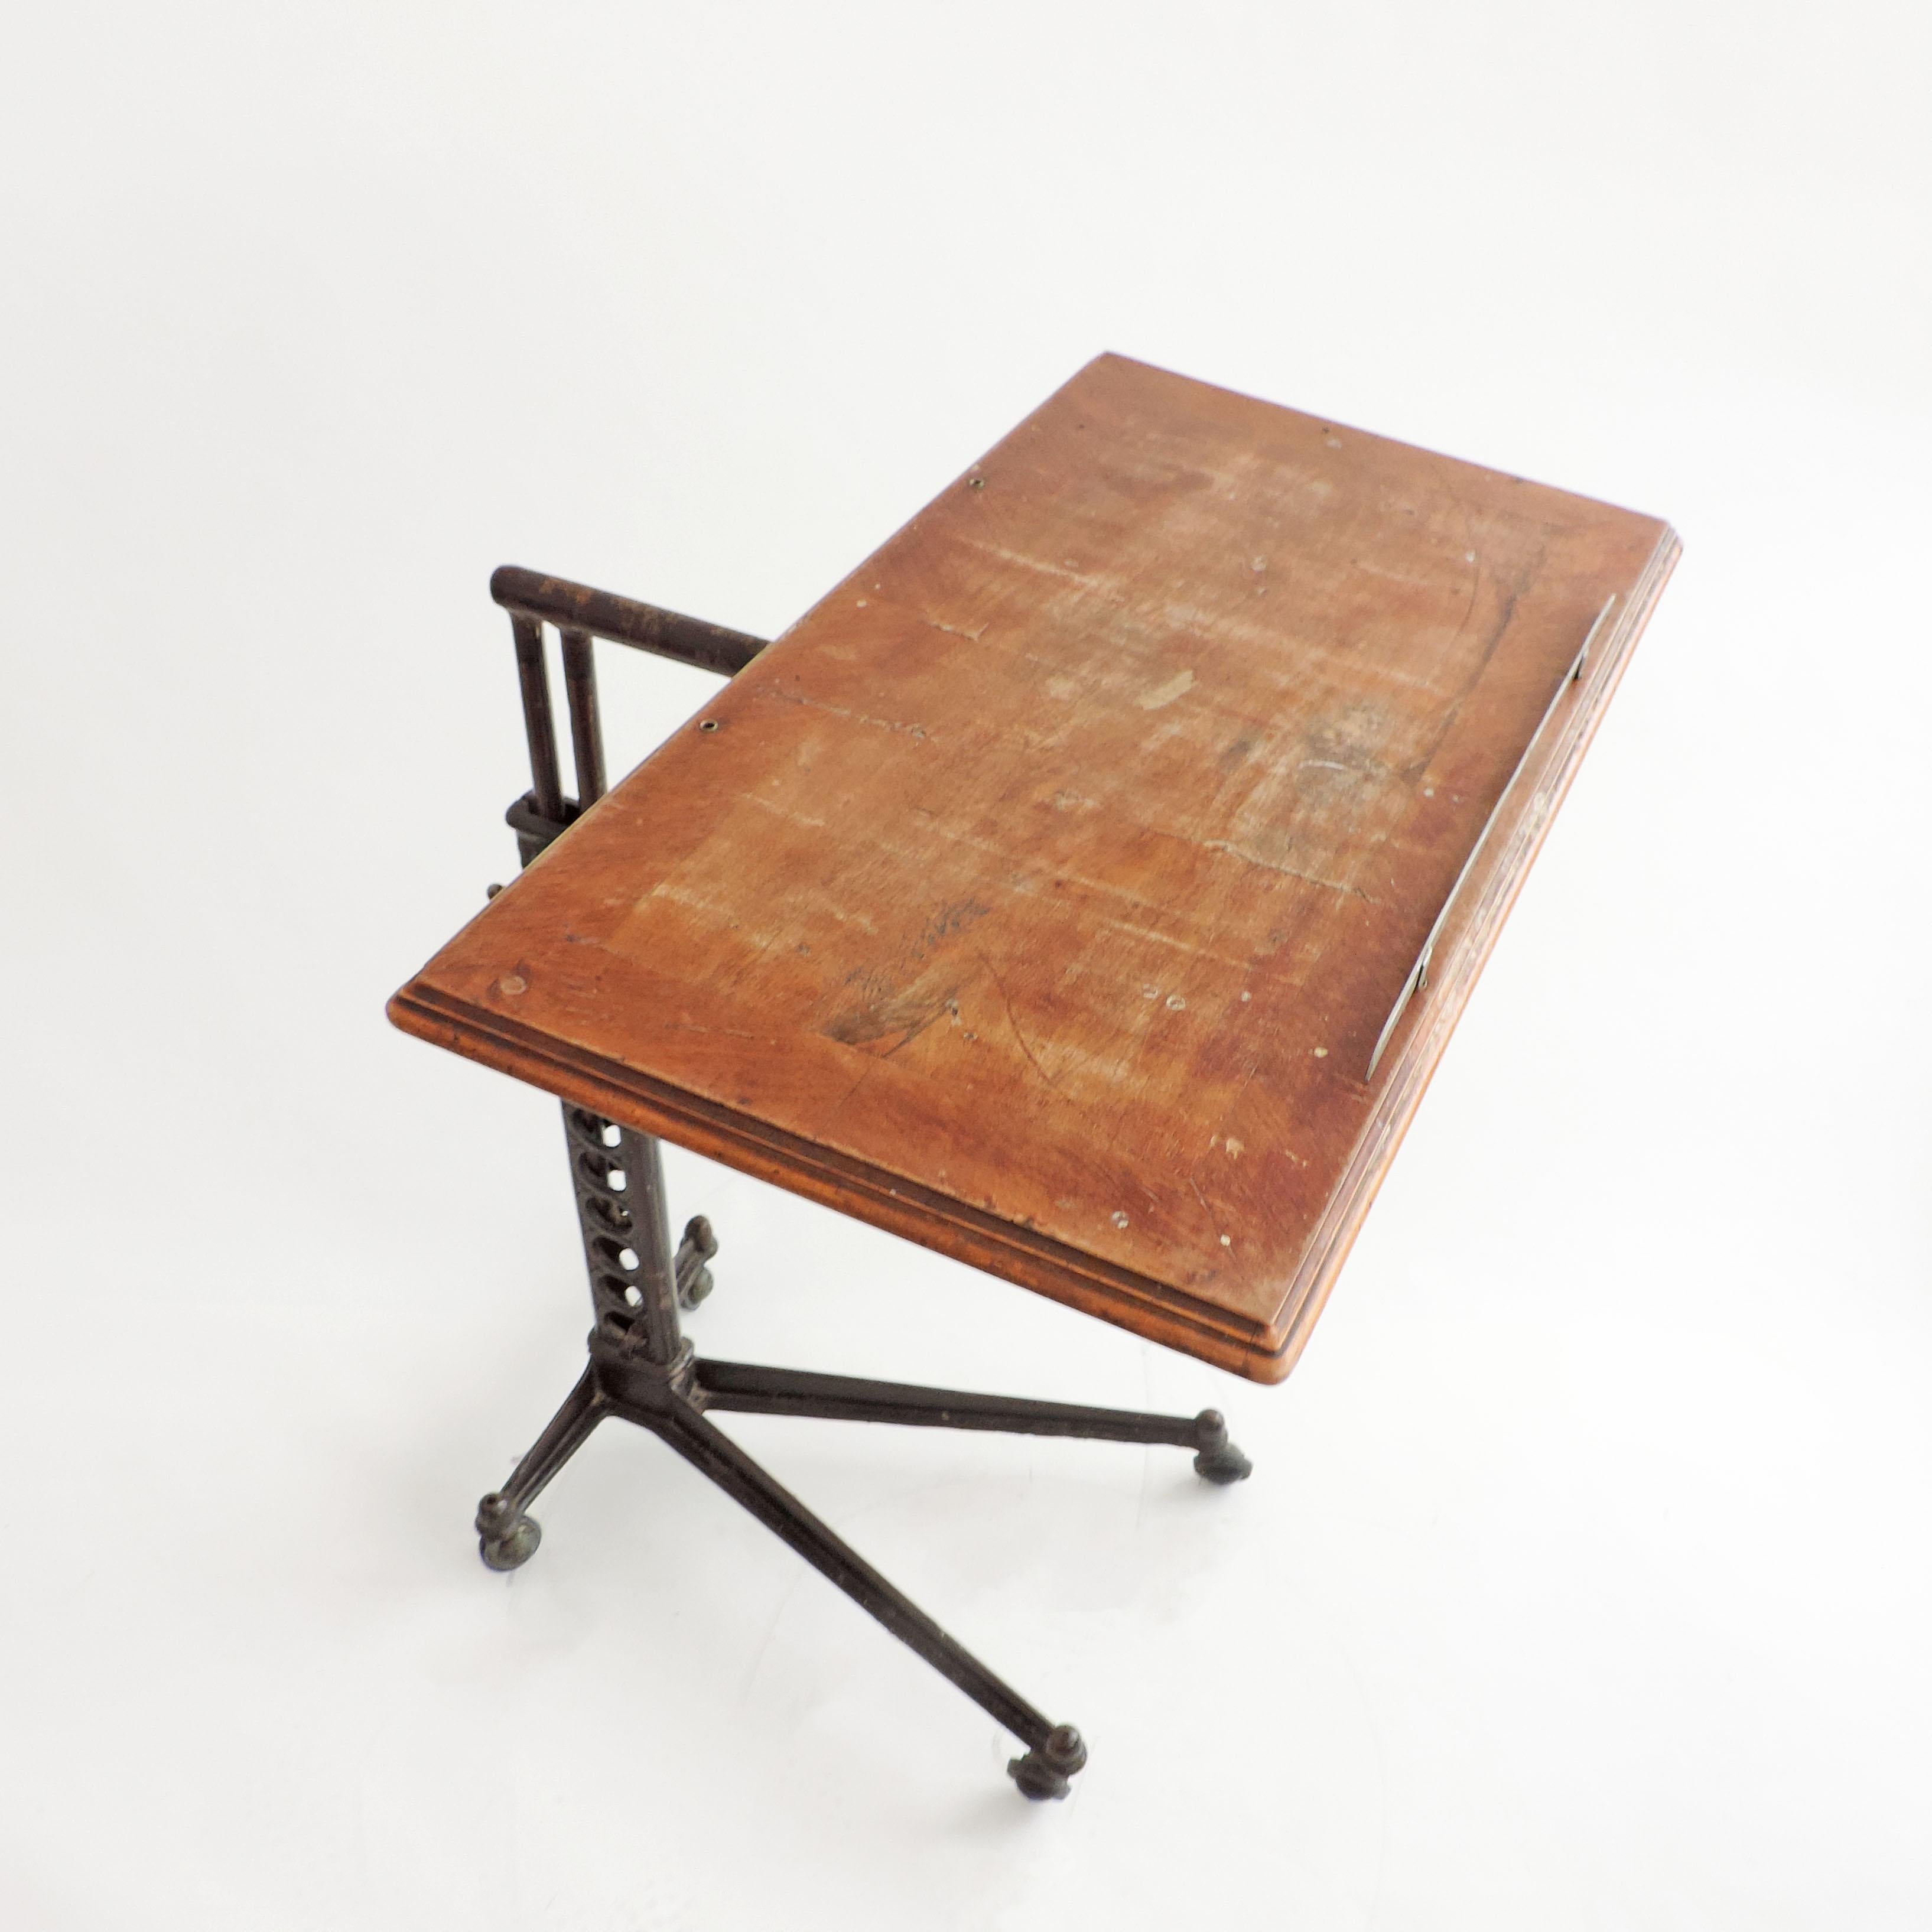 table utilitaire réglable des années 1900 en métal et bois.
Magnifiquement fabriqué.
Le plateau de la table pivote entièrement sur les côtés / de haut en bas.
 